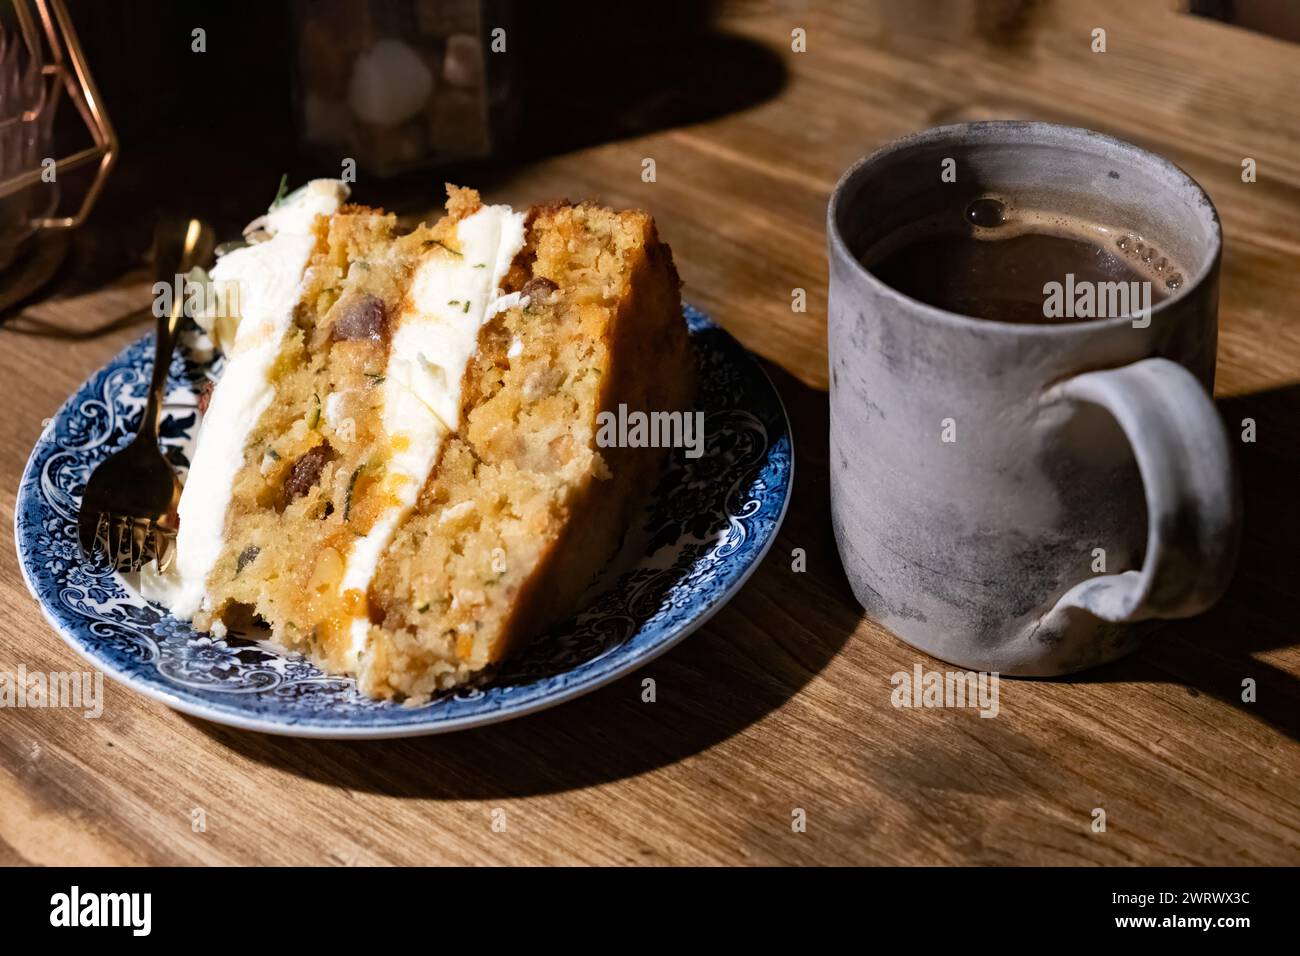 Ein frisch gebackenes Stück veganer Karotten- und Zucchini-Kuchen. Der Kuchen wird auf einem Café-Tisch mit einer frischen Tasse schwarzen Kaffee serviert Stockfoto